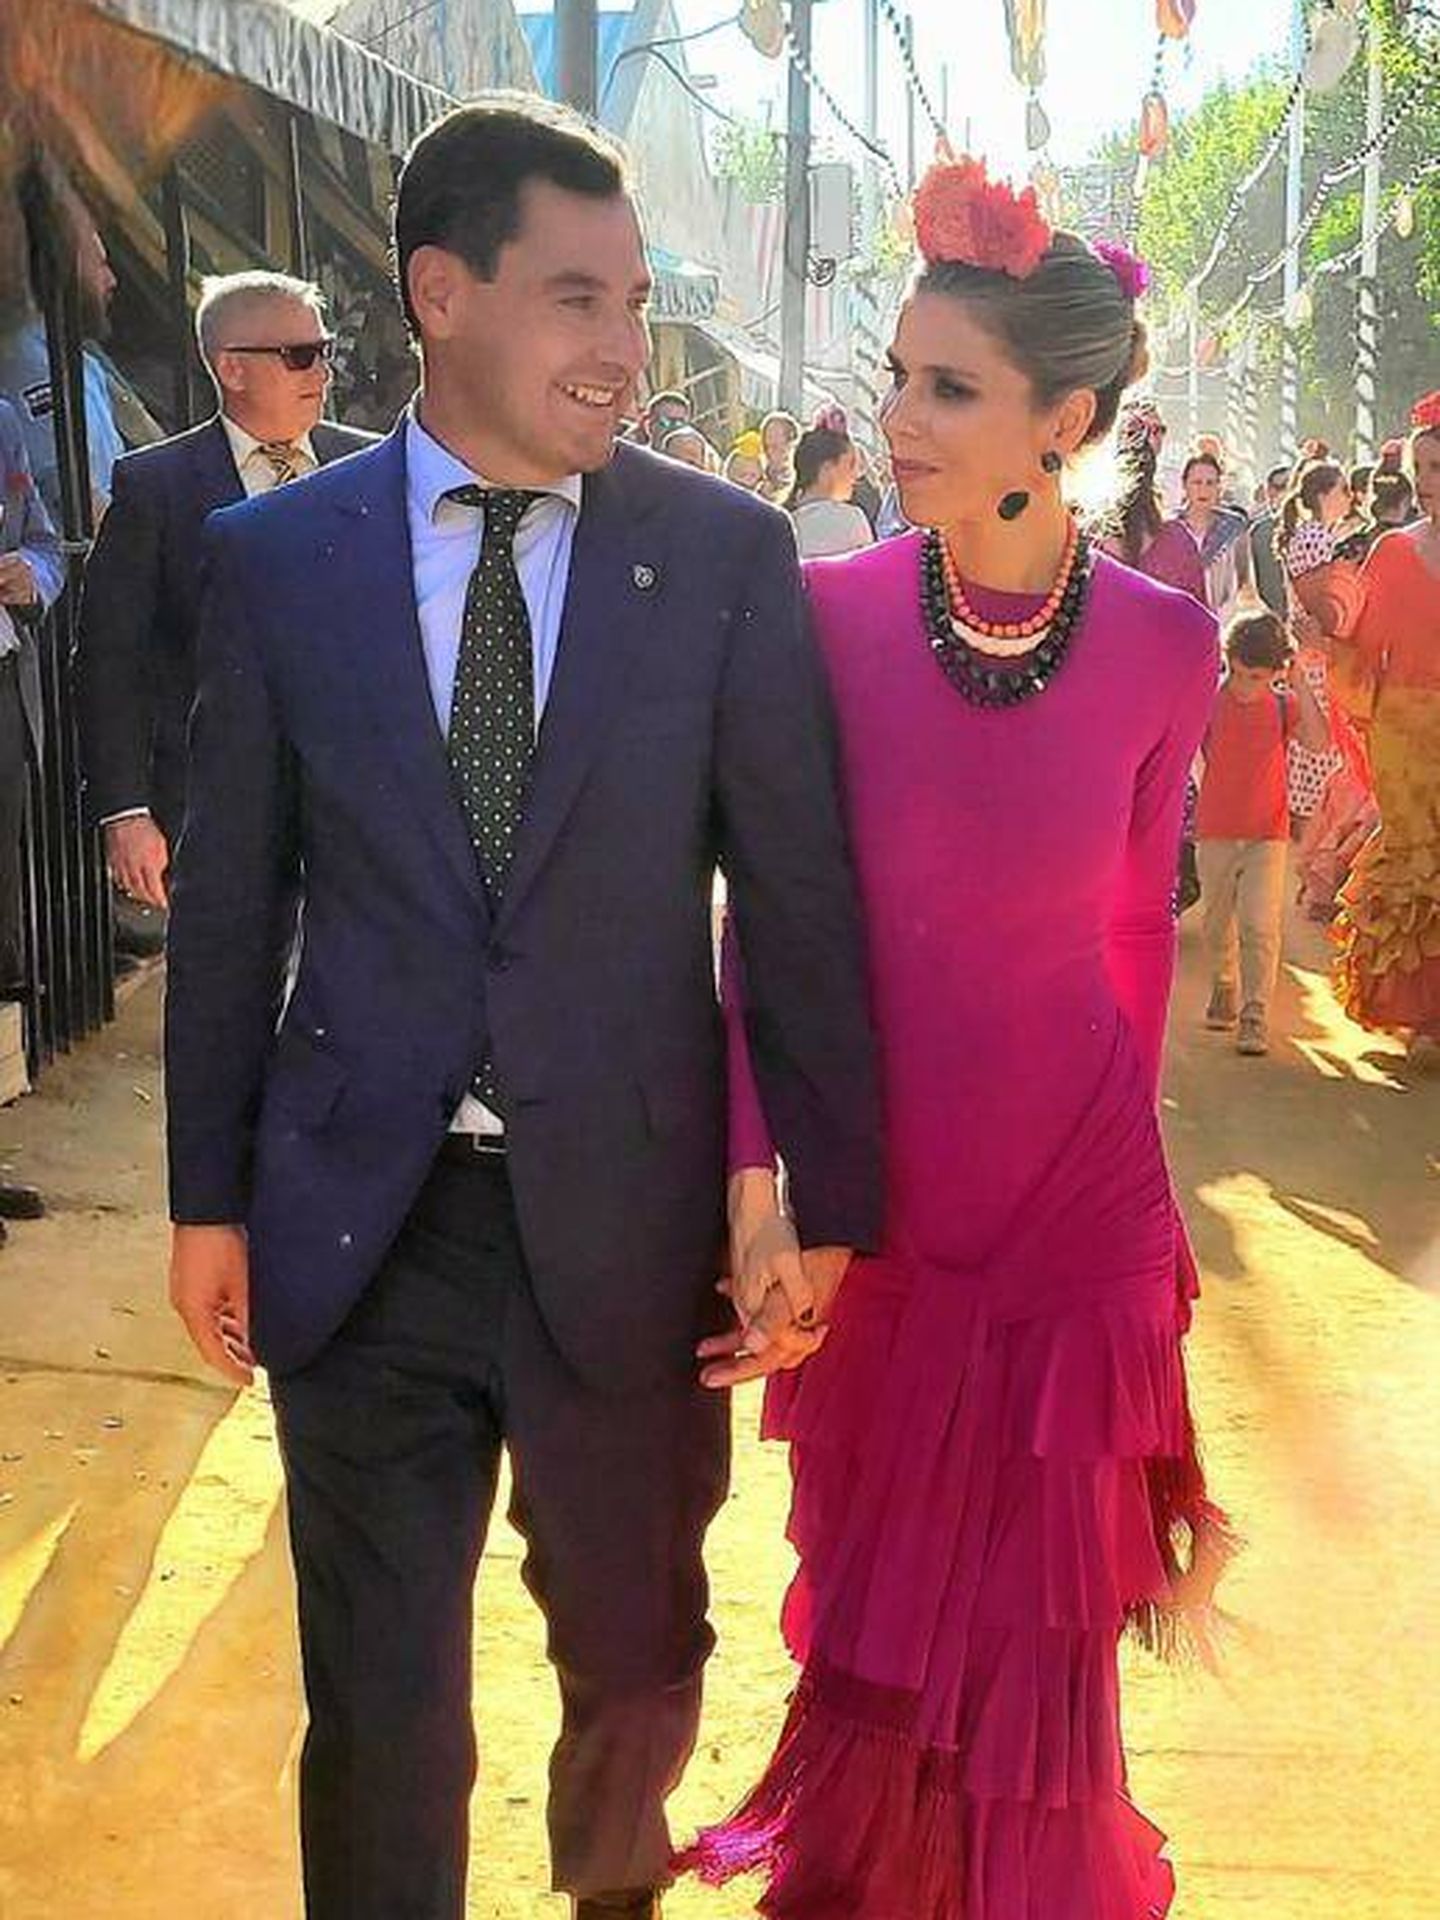 Juanma Moreno Bonilla y su esposa pasean por el recinto ferial. (Cortesía)